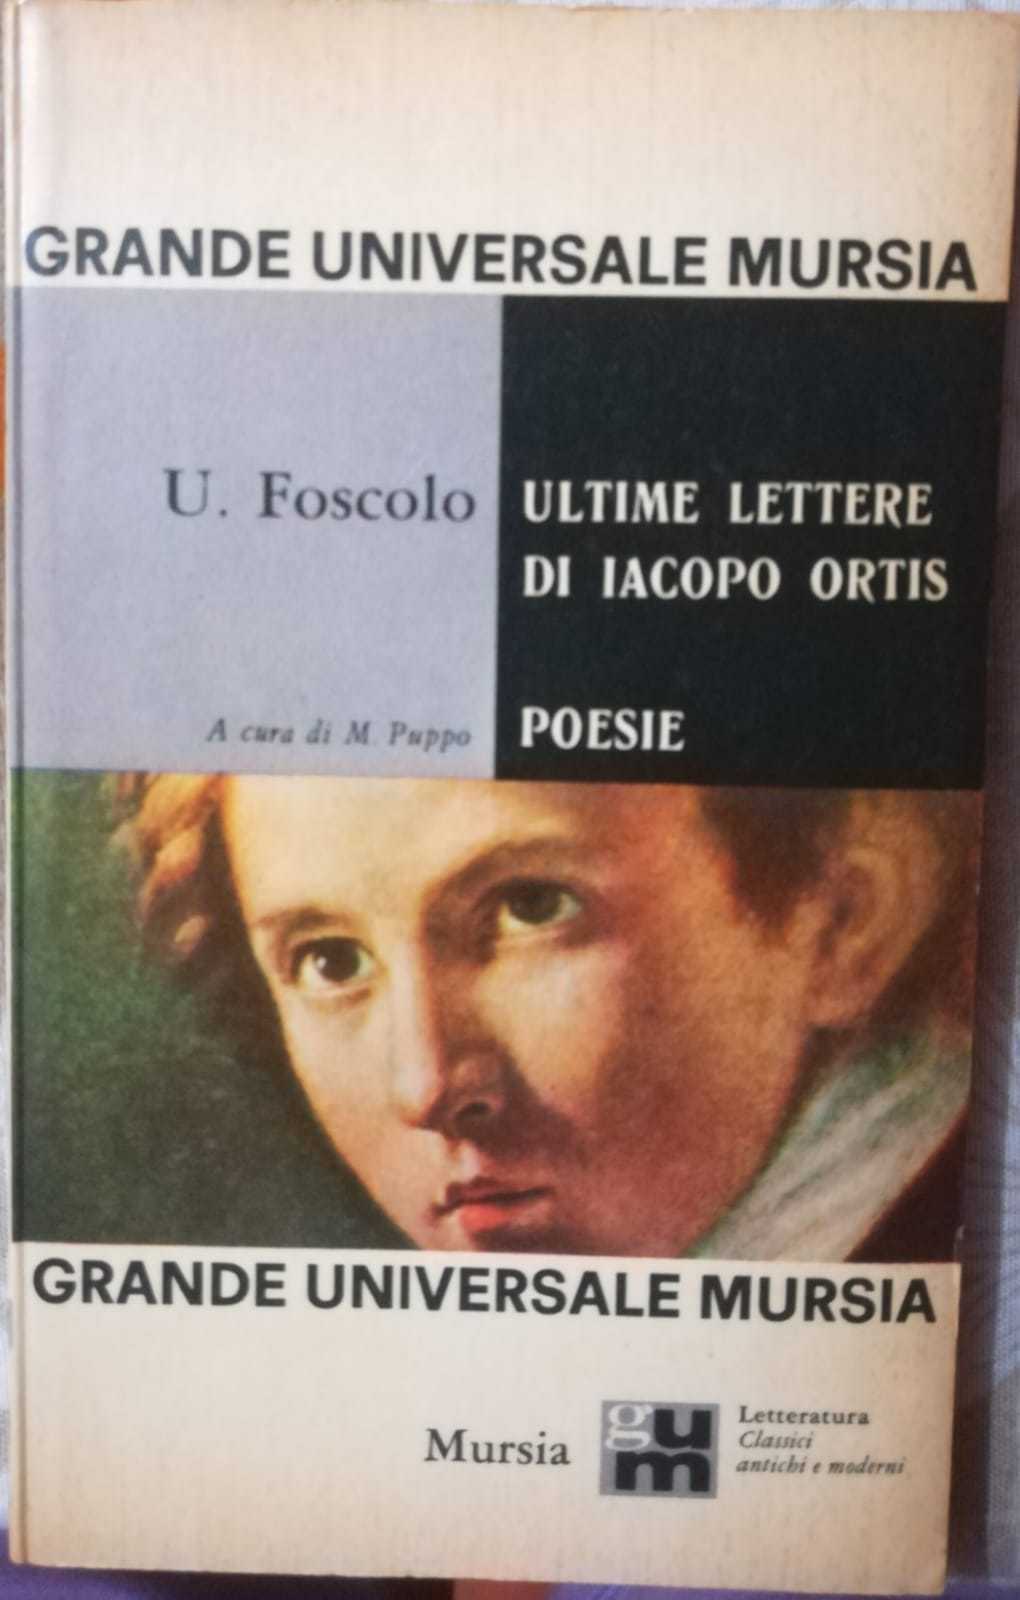 Ultime lettere di Iacopo Ortis- Poesie Ugo Foscolo-M. Puppo,1965, Mursia - S